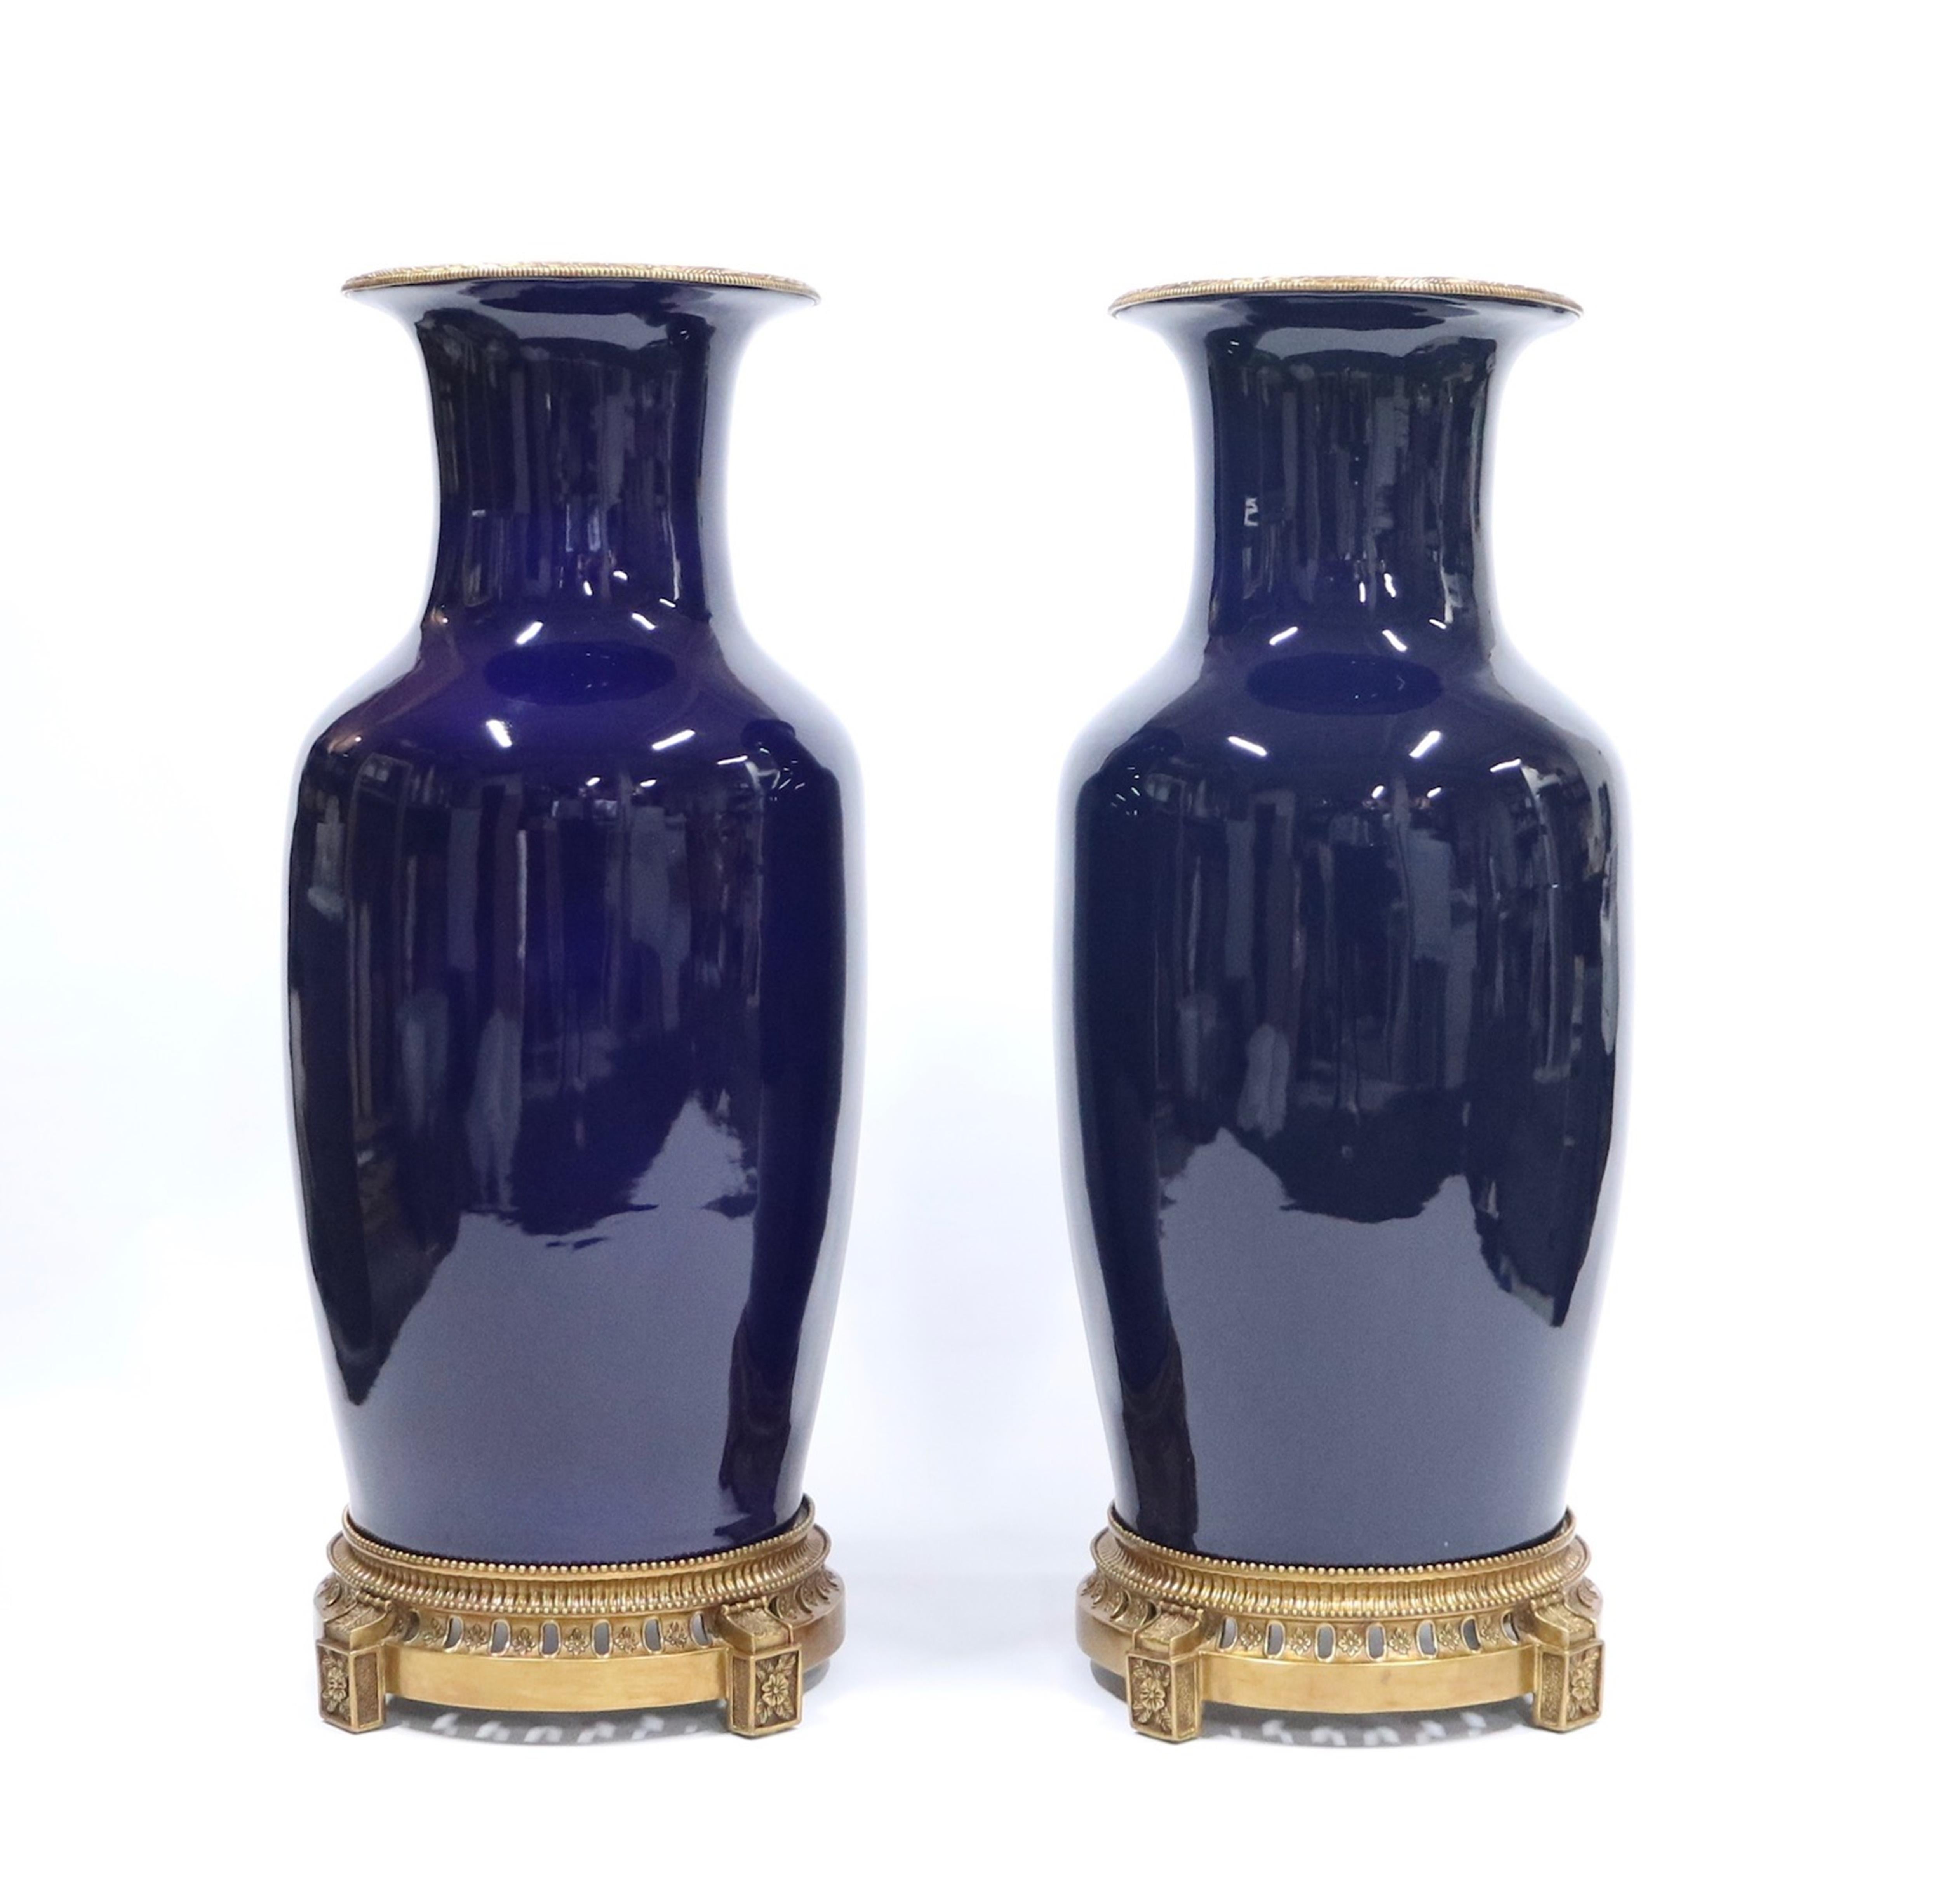 Bronze Monumental Hollywood Regency Sevres Style Vases in Cobalt Blue